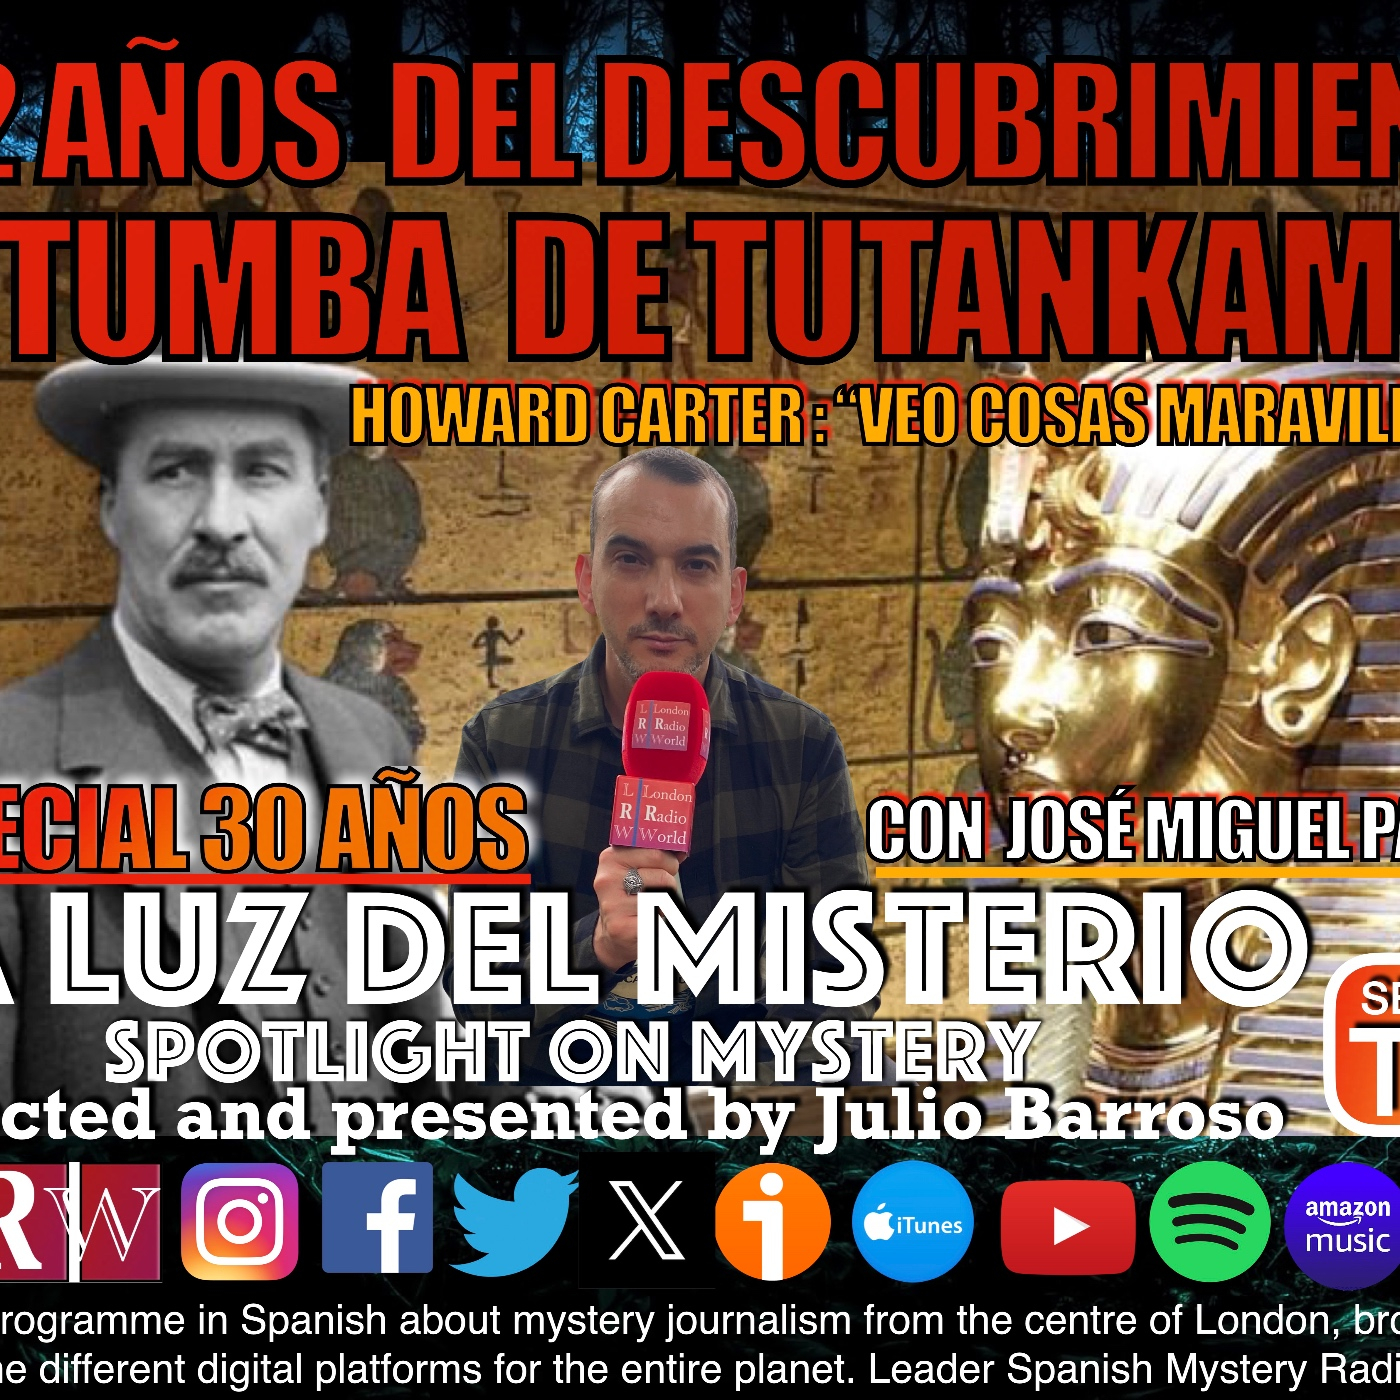 102 años del descubrimiento de la Tumba de Tutankamón con José Miguel Parra